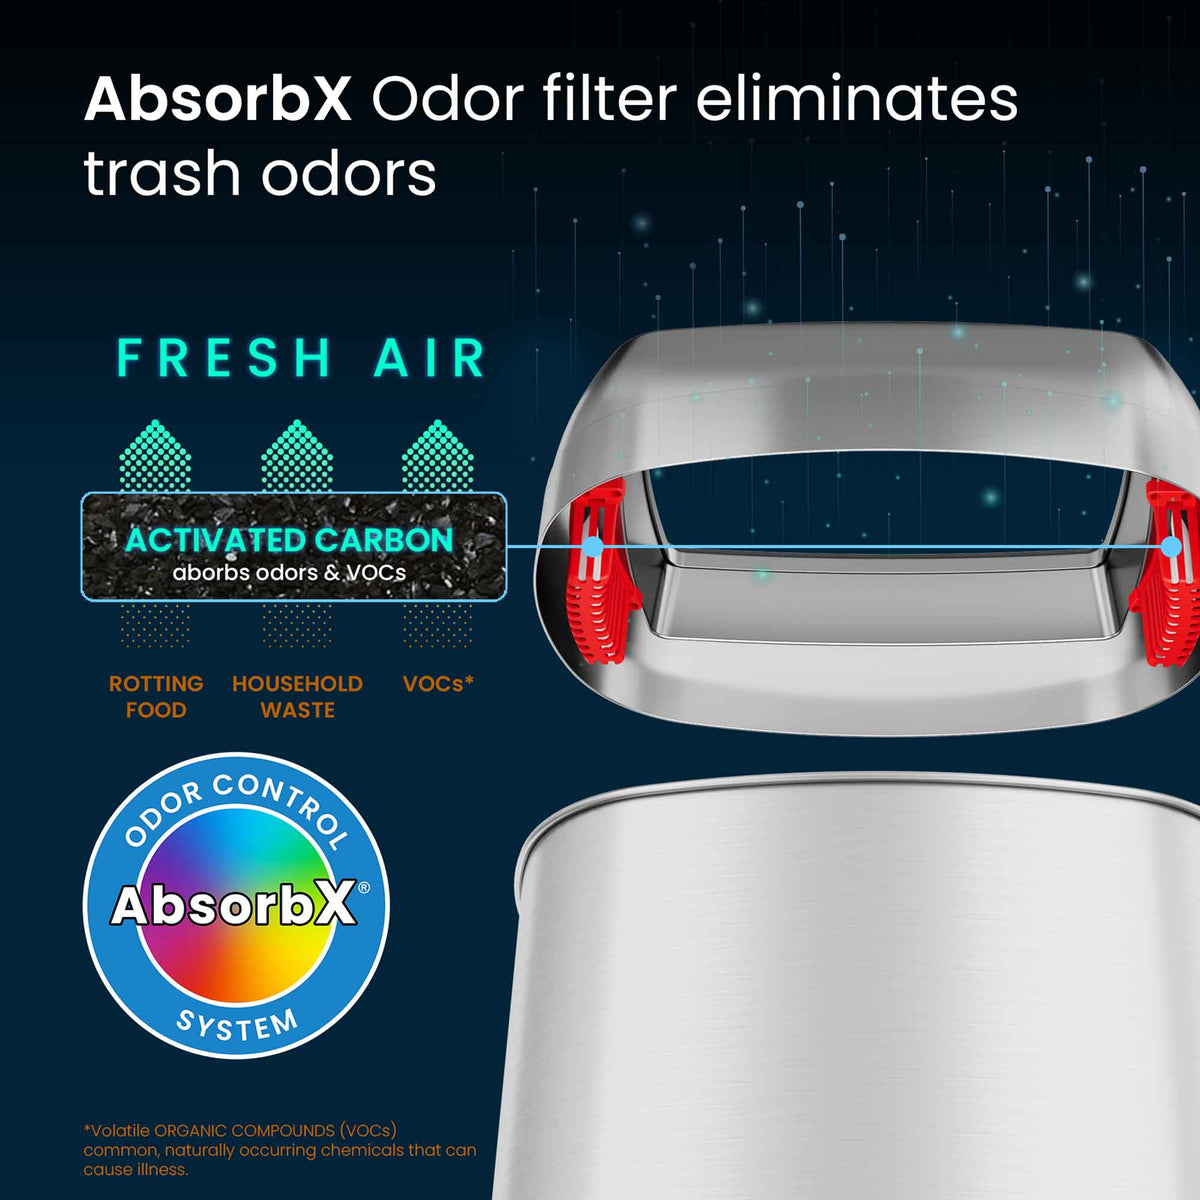 16 Gallon / 60 Liter Elliptical Open Top Trash Can AbsorbX Odor Filter eliminates trash odors